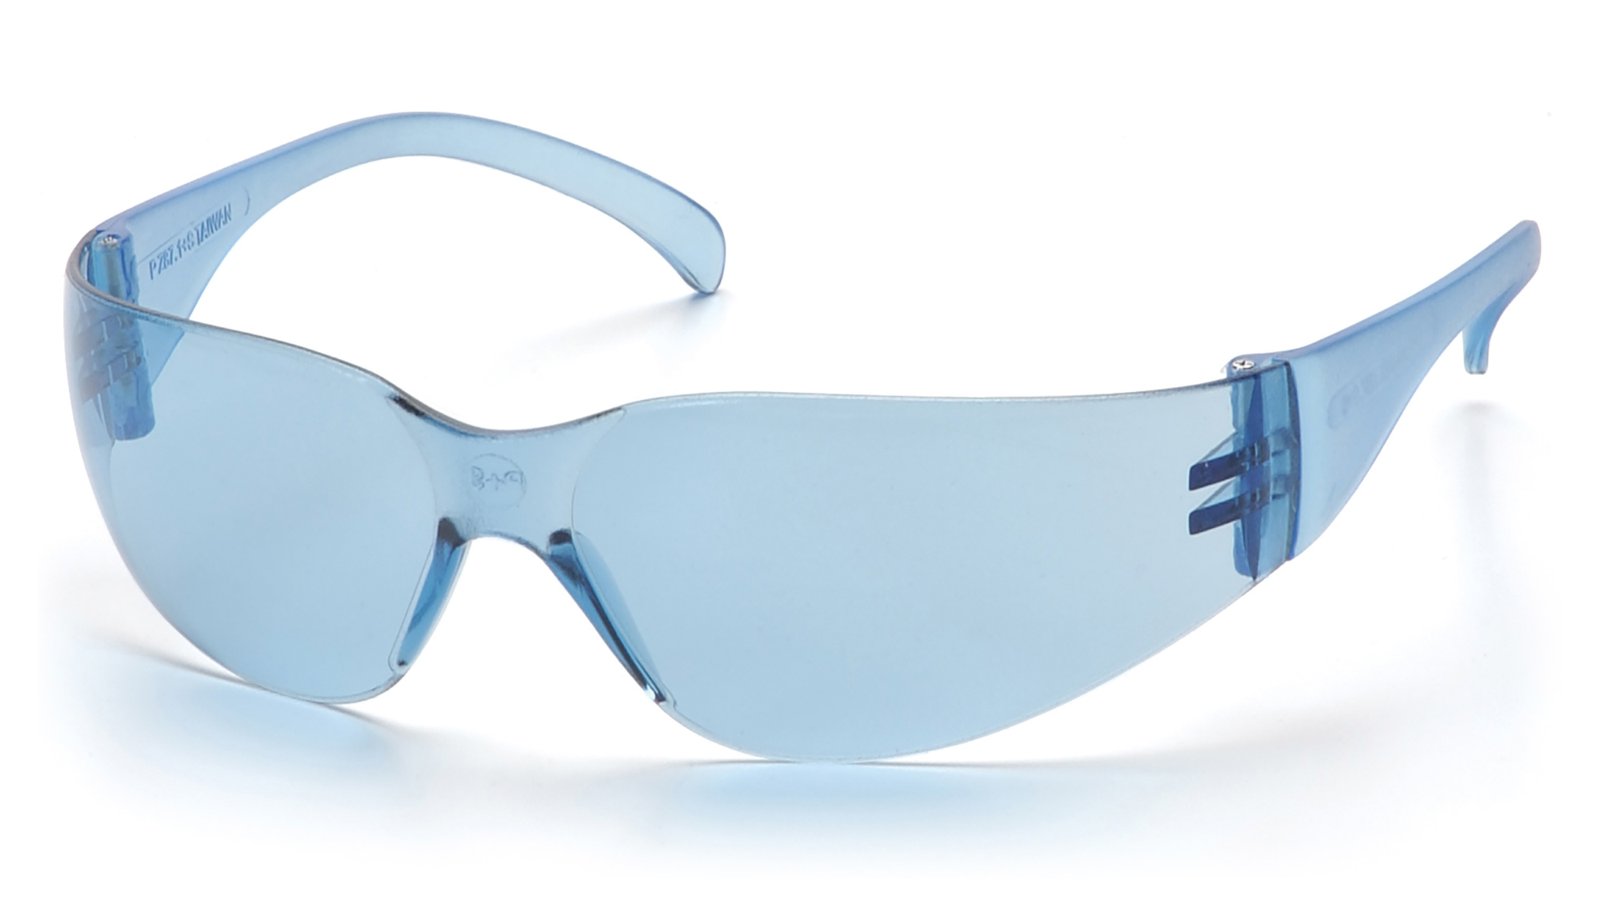 Intruder Safety Glasses - Infinity Blue Lens/Frame